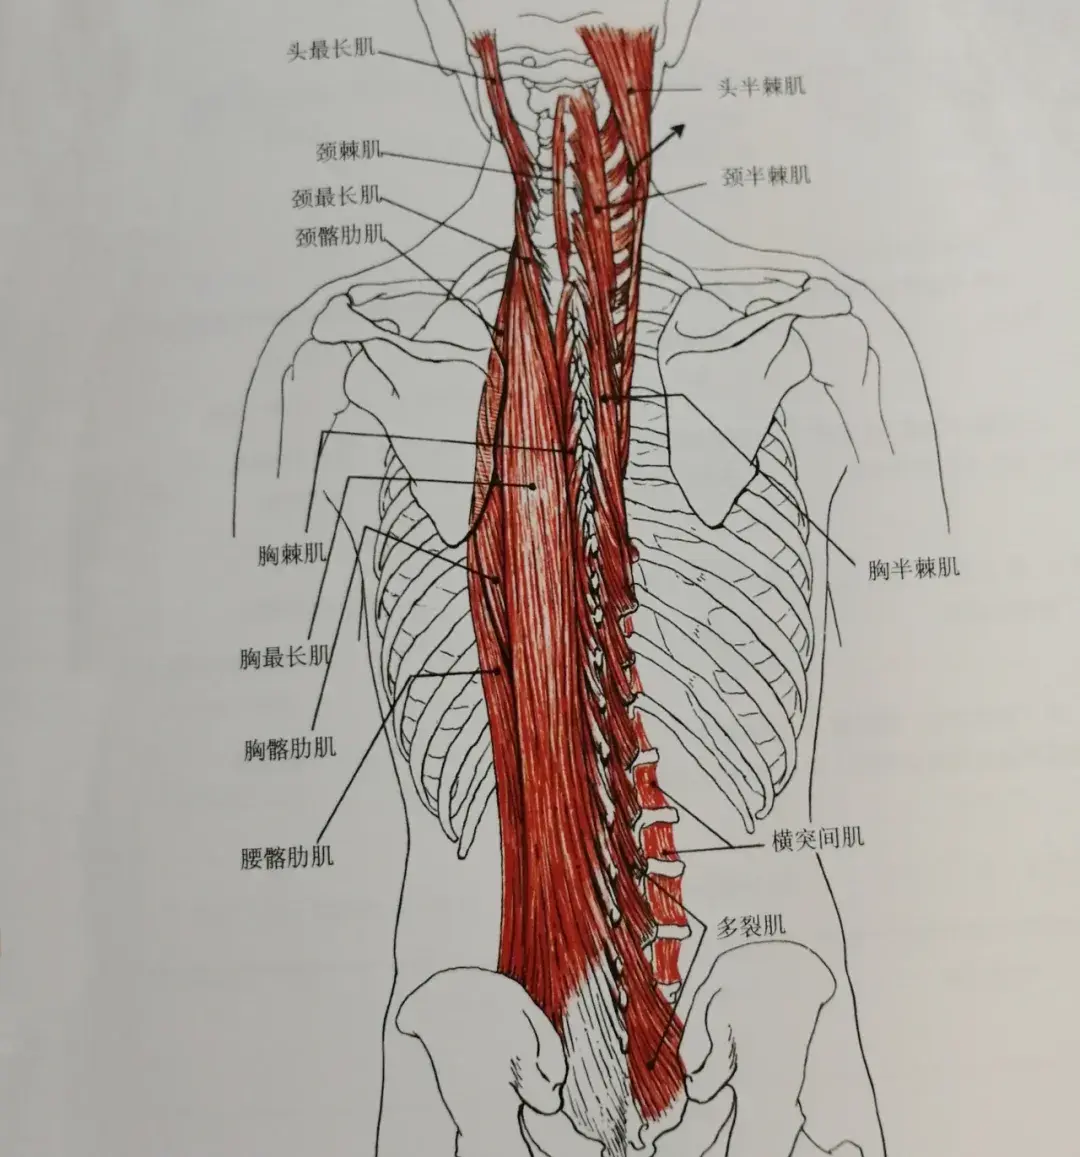 竖脊肌——竖脊肌首当其冲其中,跨越距离最长,最忙碌的肌肉之一重压